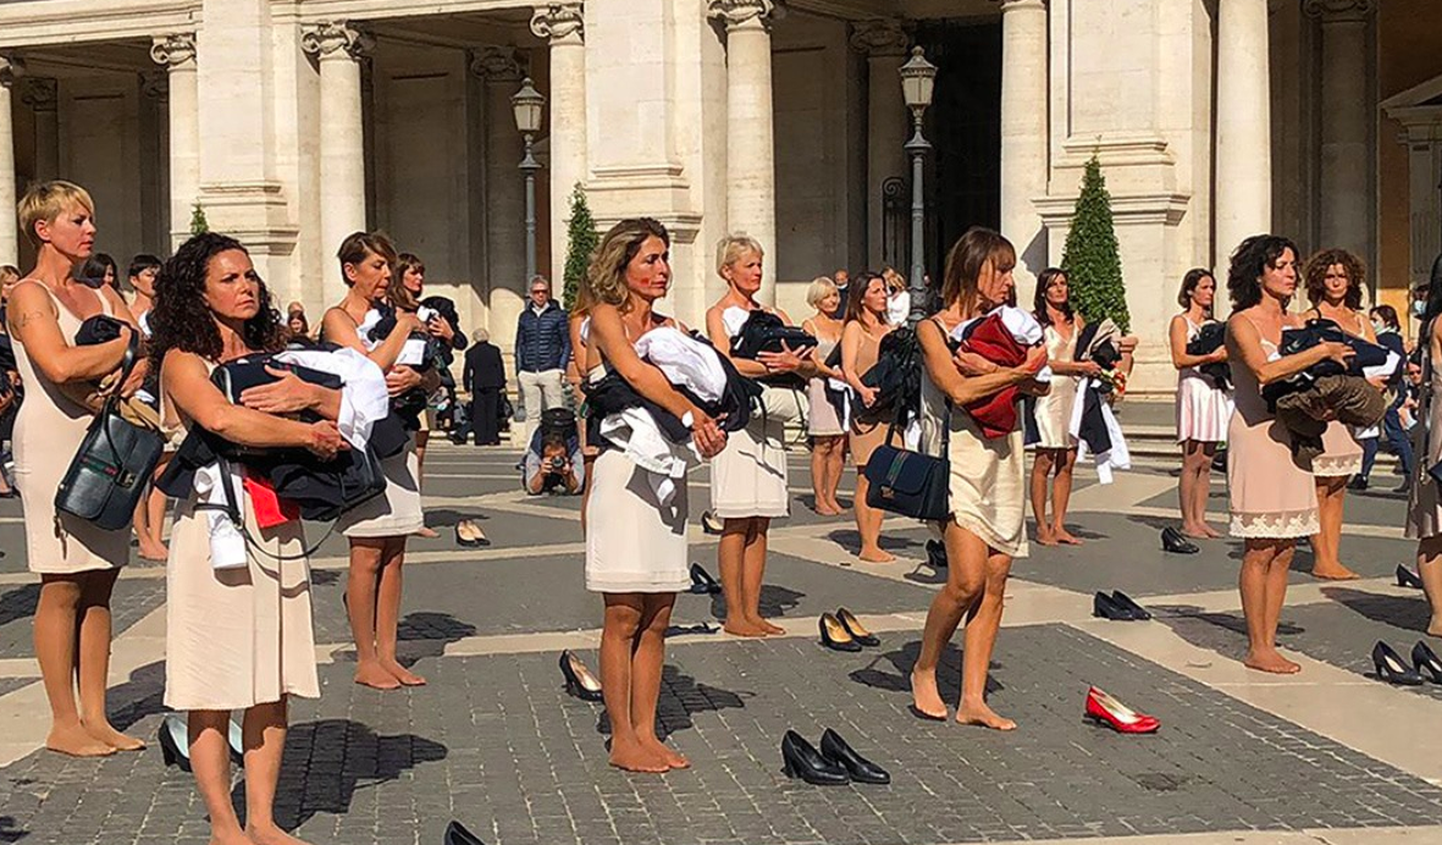 Itāļu stjuartes izģērbšanās protestā Romas ielās